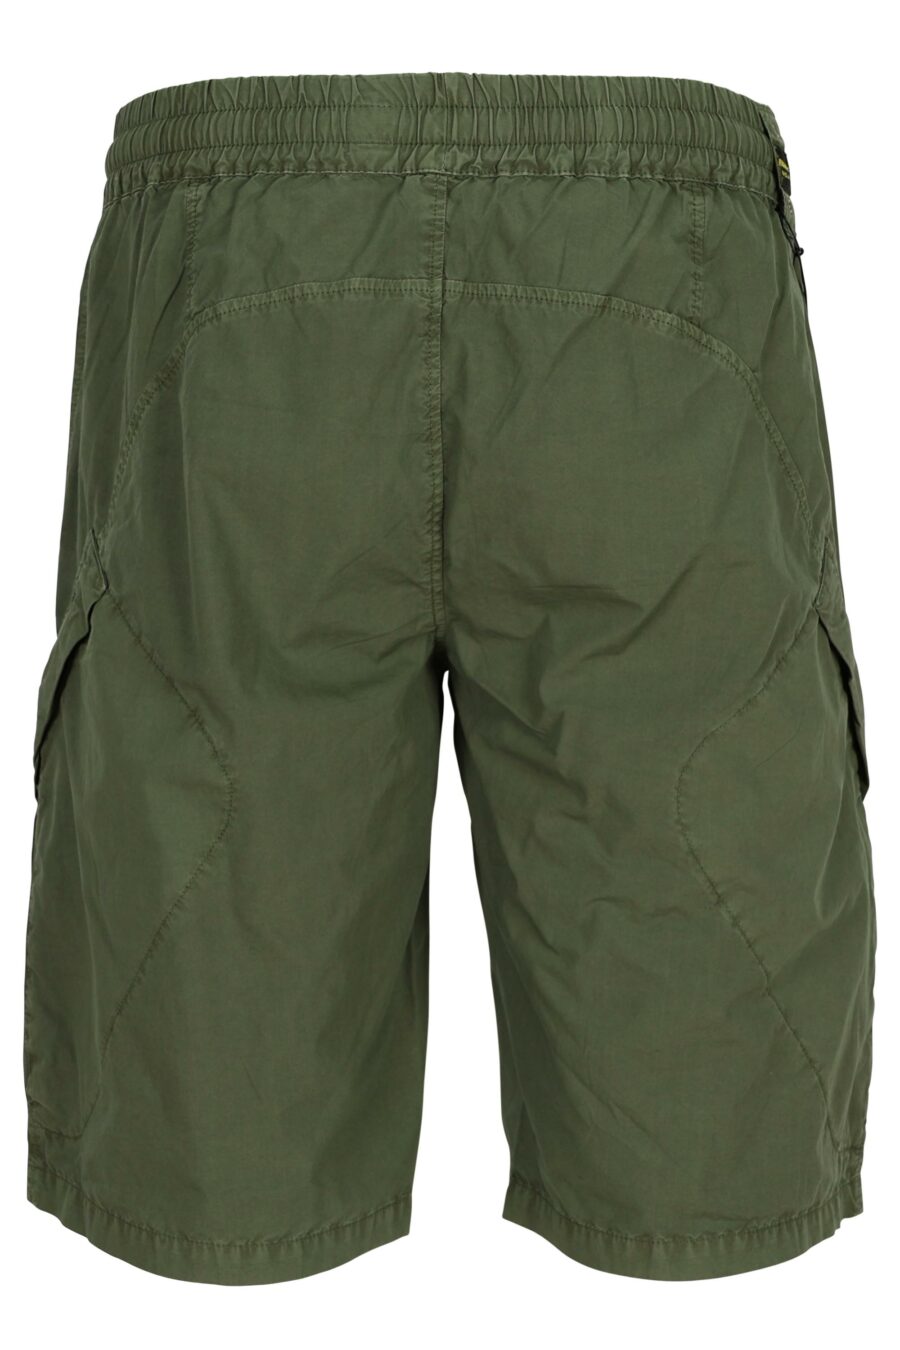 Militärische grüne Shorts mit Feder - 8058610775407 2